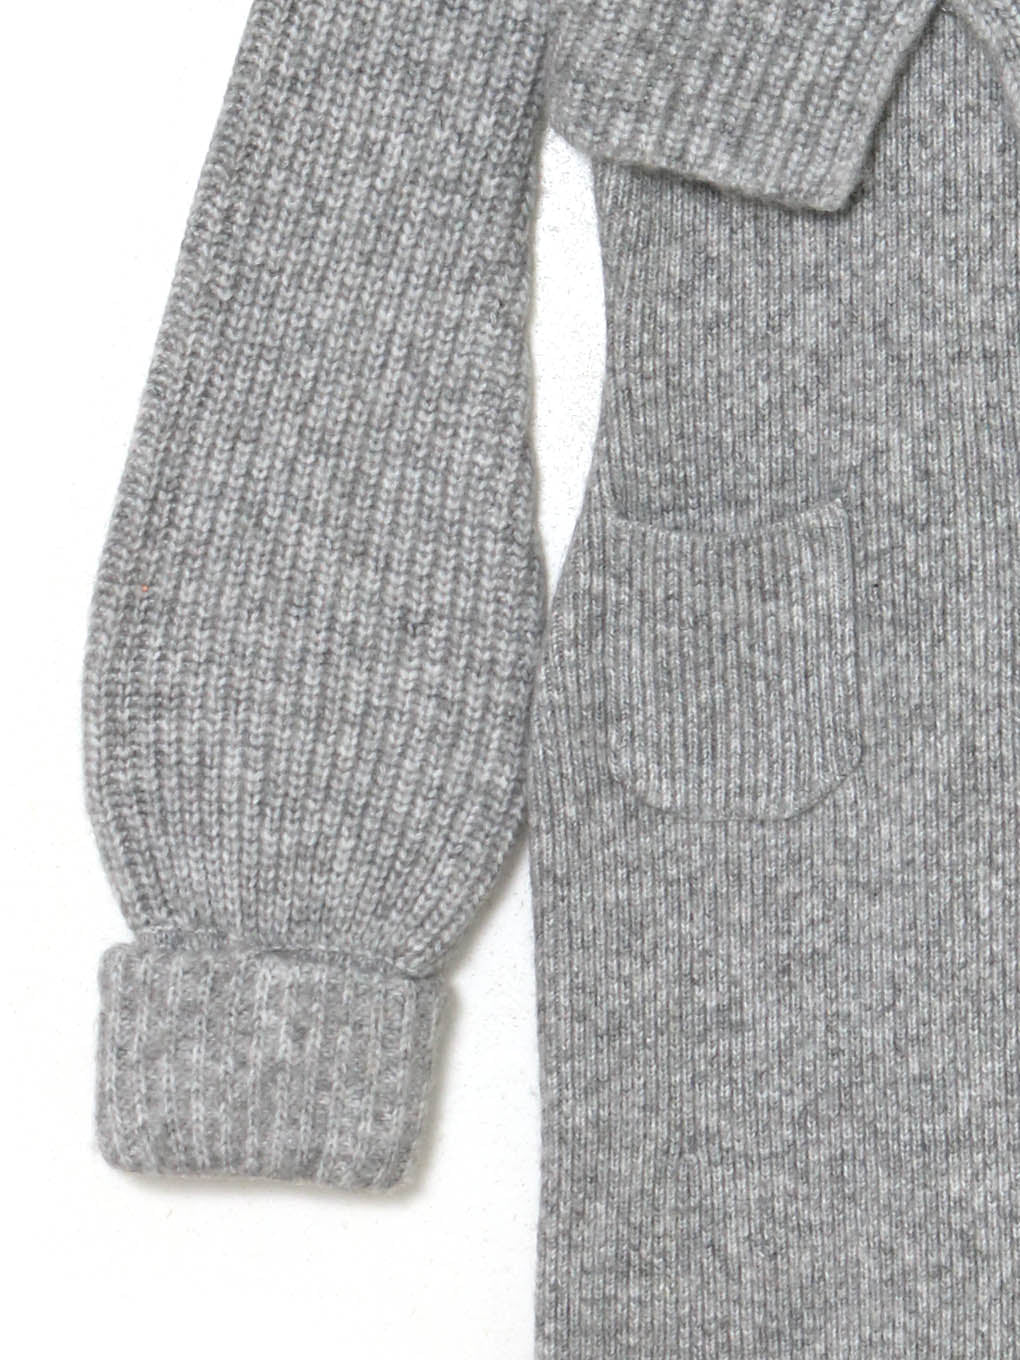 【新品未使用】andmary Luz knit set dress ワンピースアンドマリー